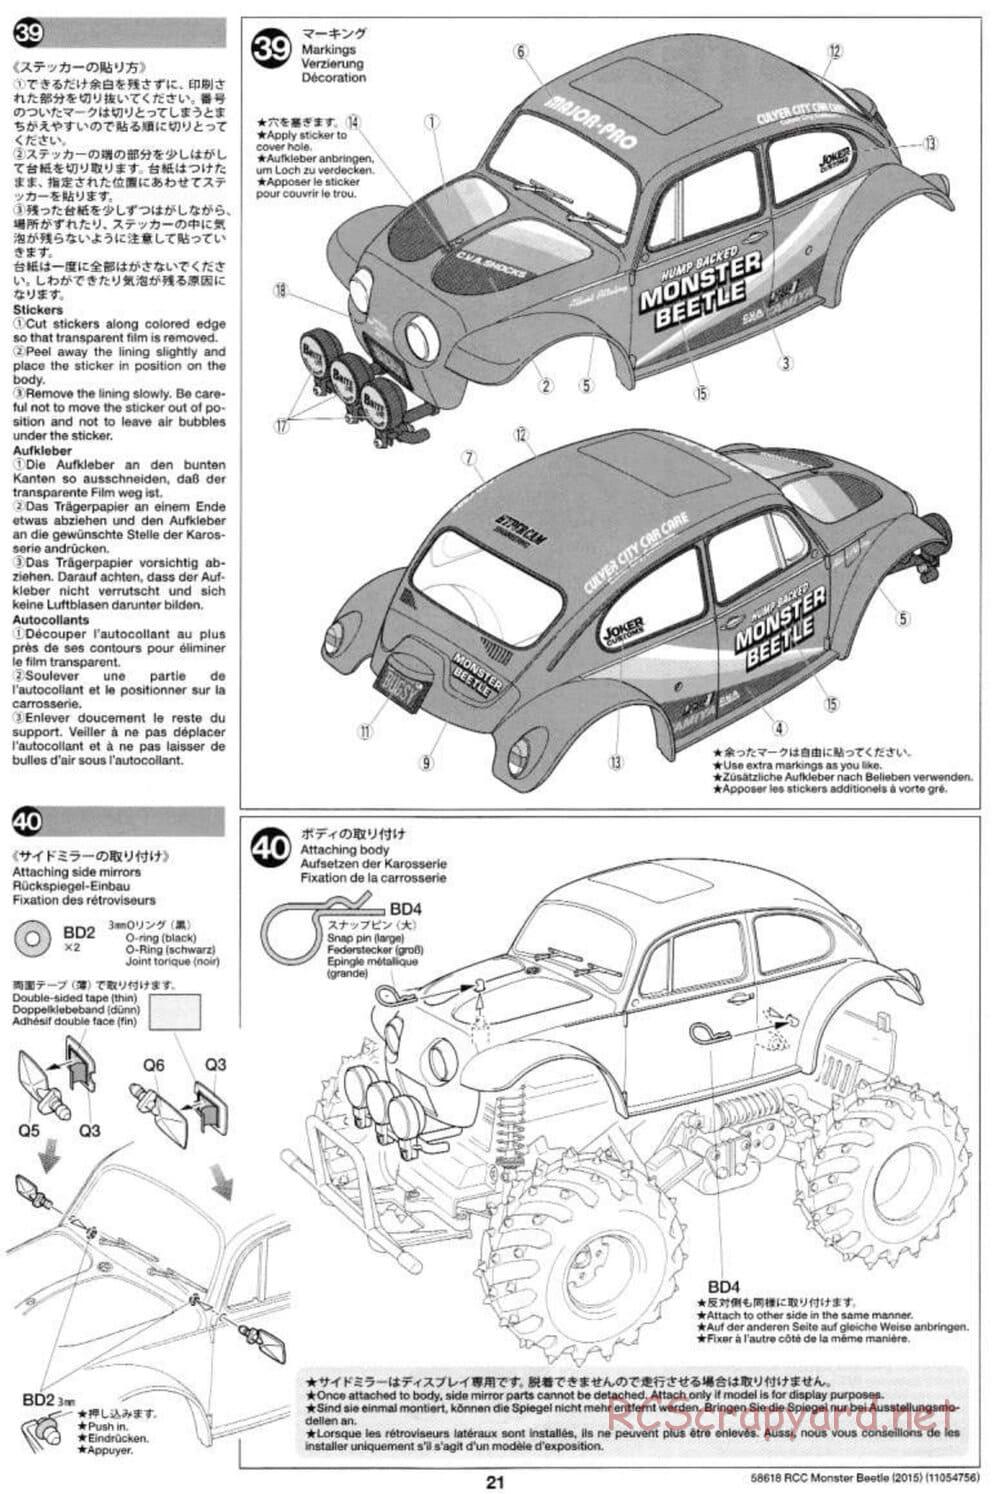 Tamiya - Monster Beetle 2015 - ORV Chassis - Manual - Page 21